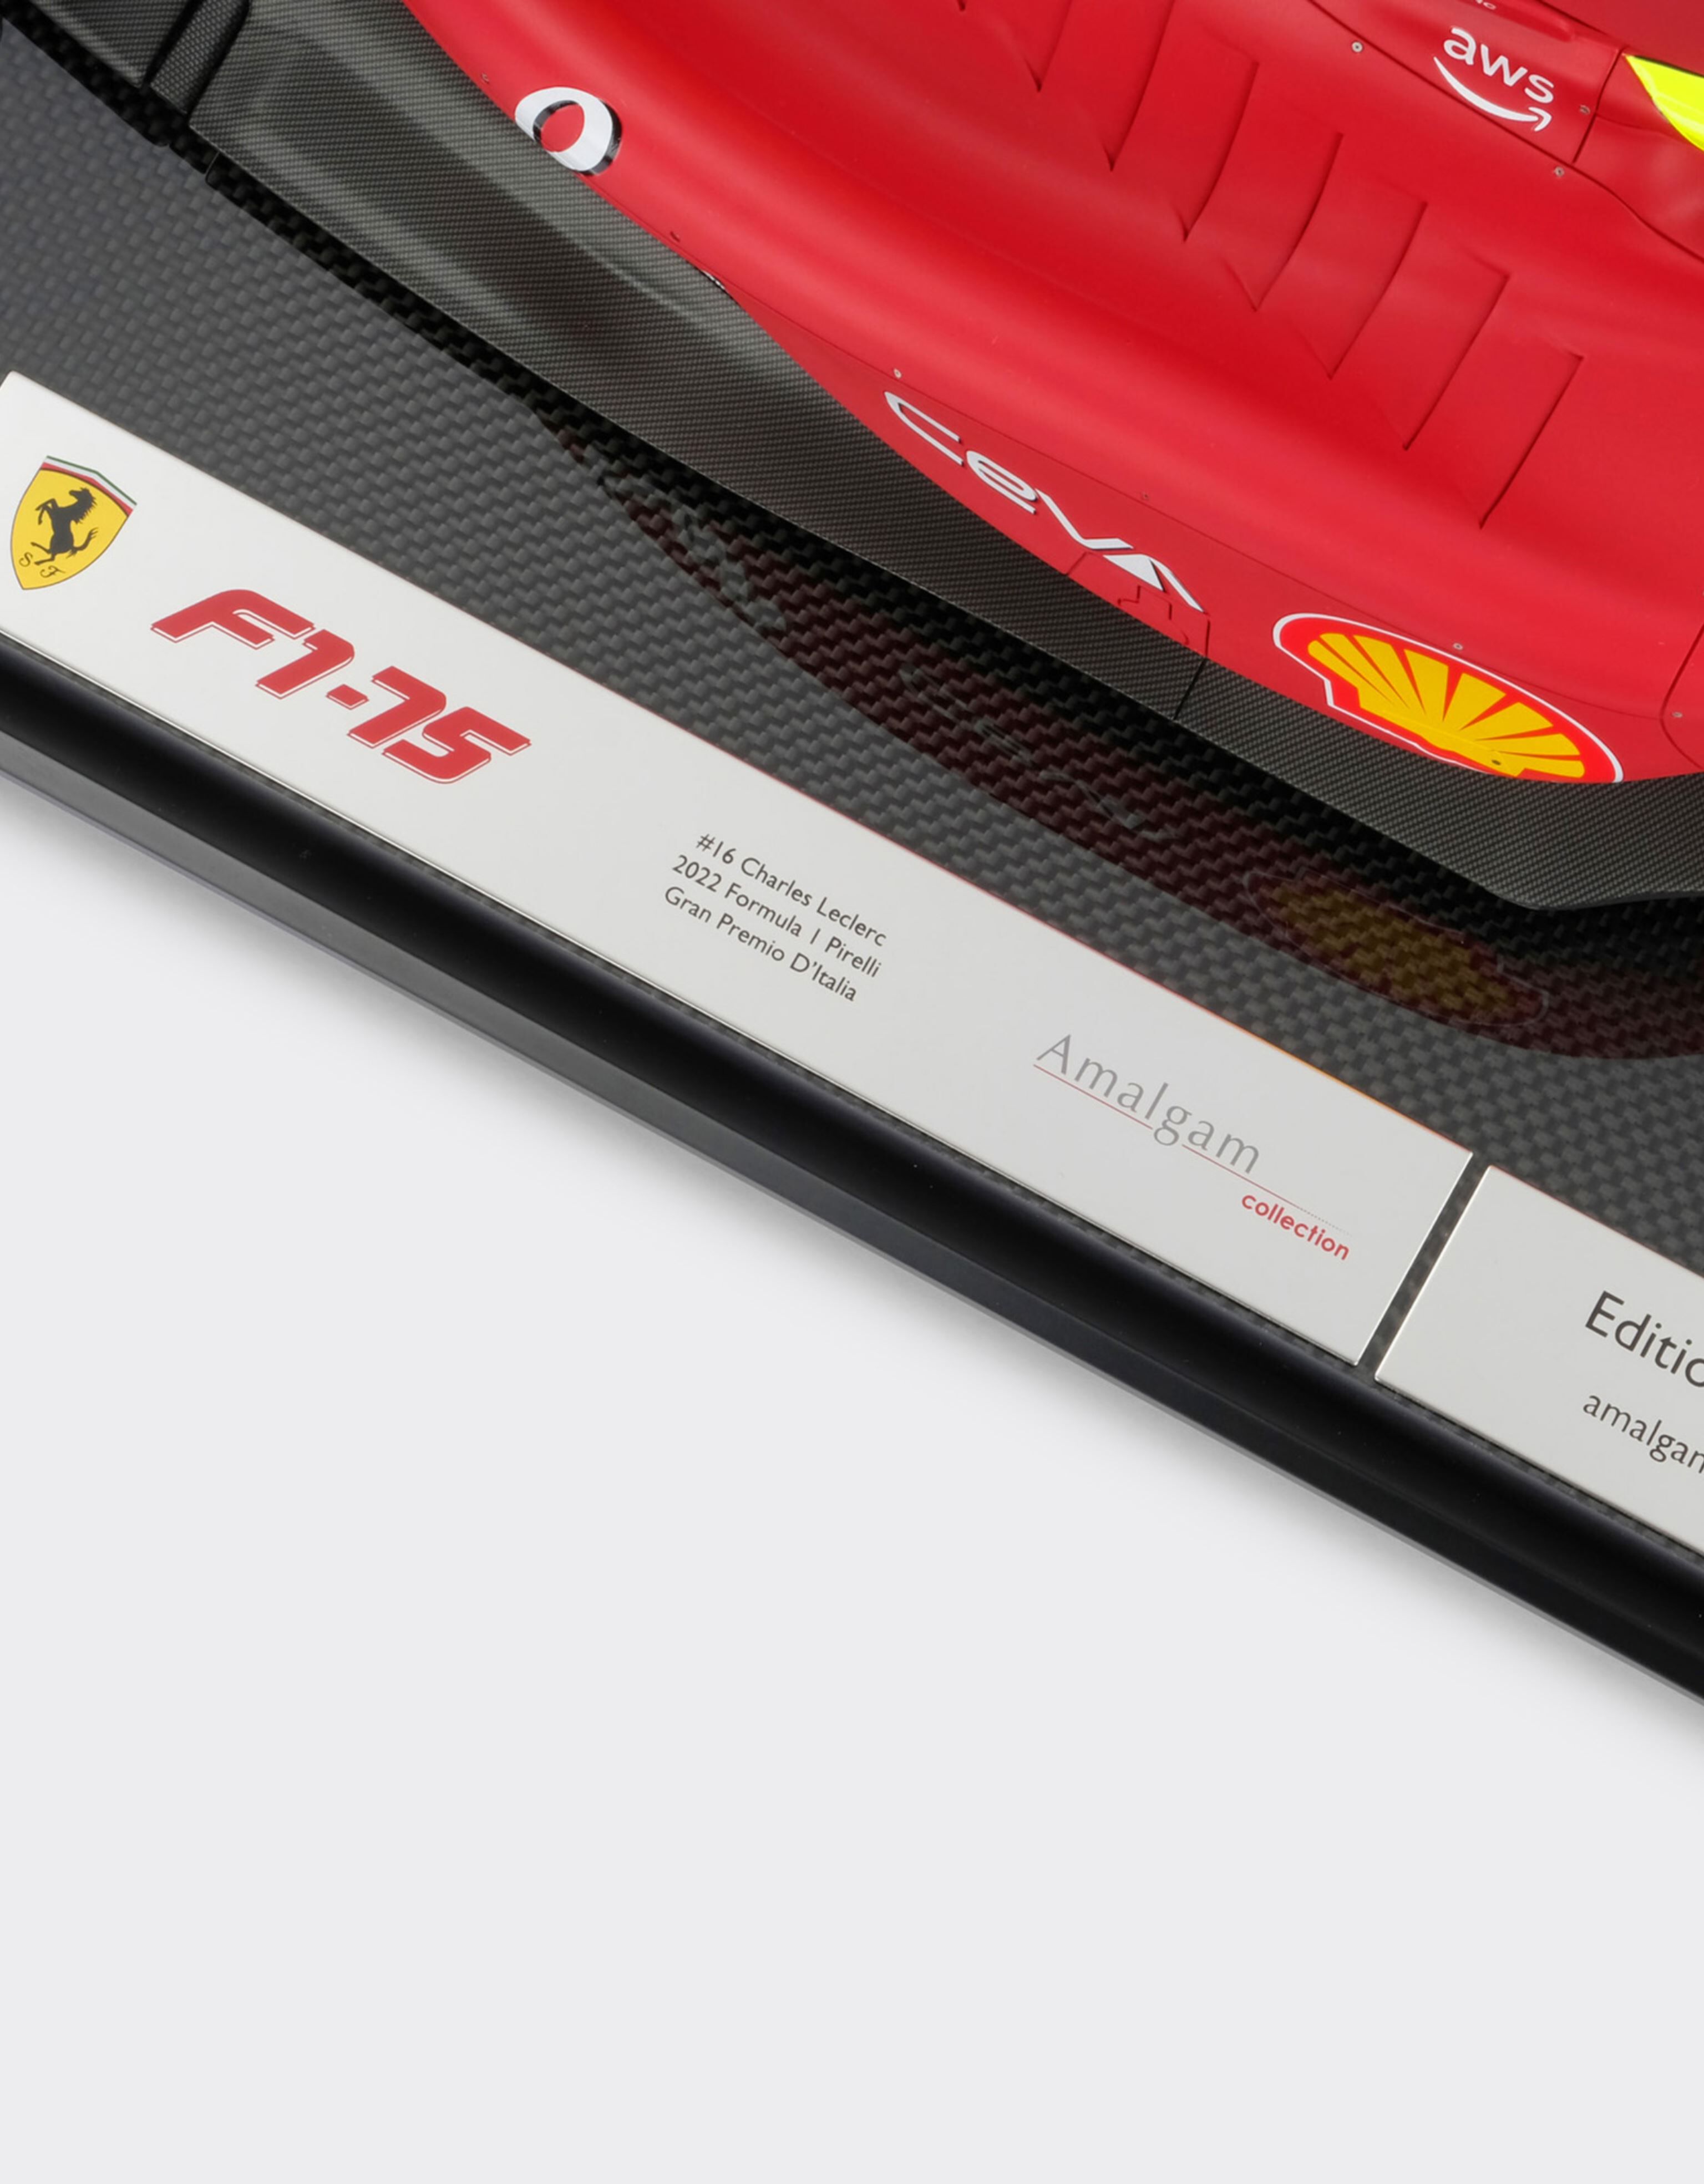 Ferrari Ferrari F1-75 シャルル・ルクレール モデルカー 1:8スケール Rosso Corsa F0883f